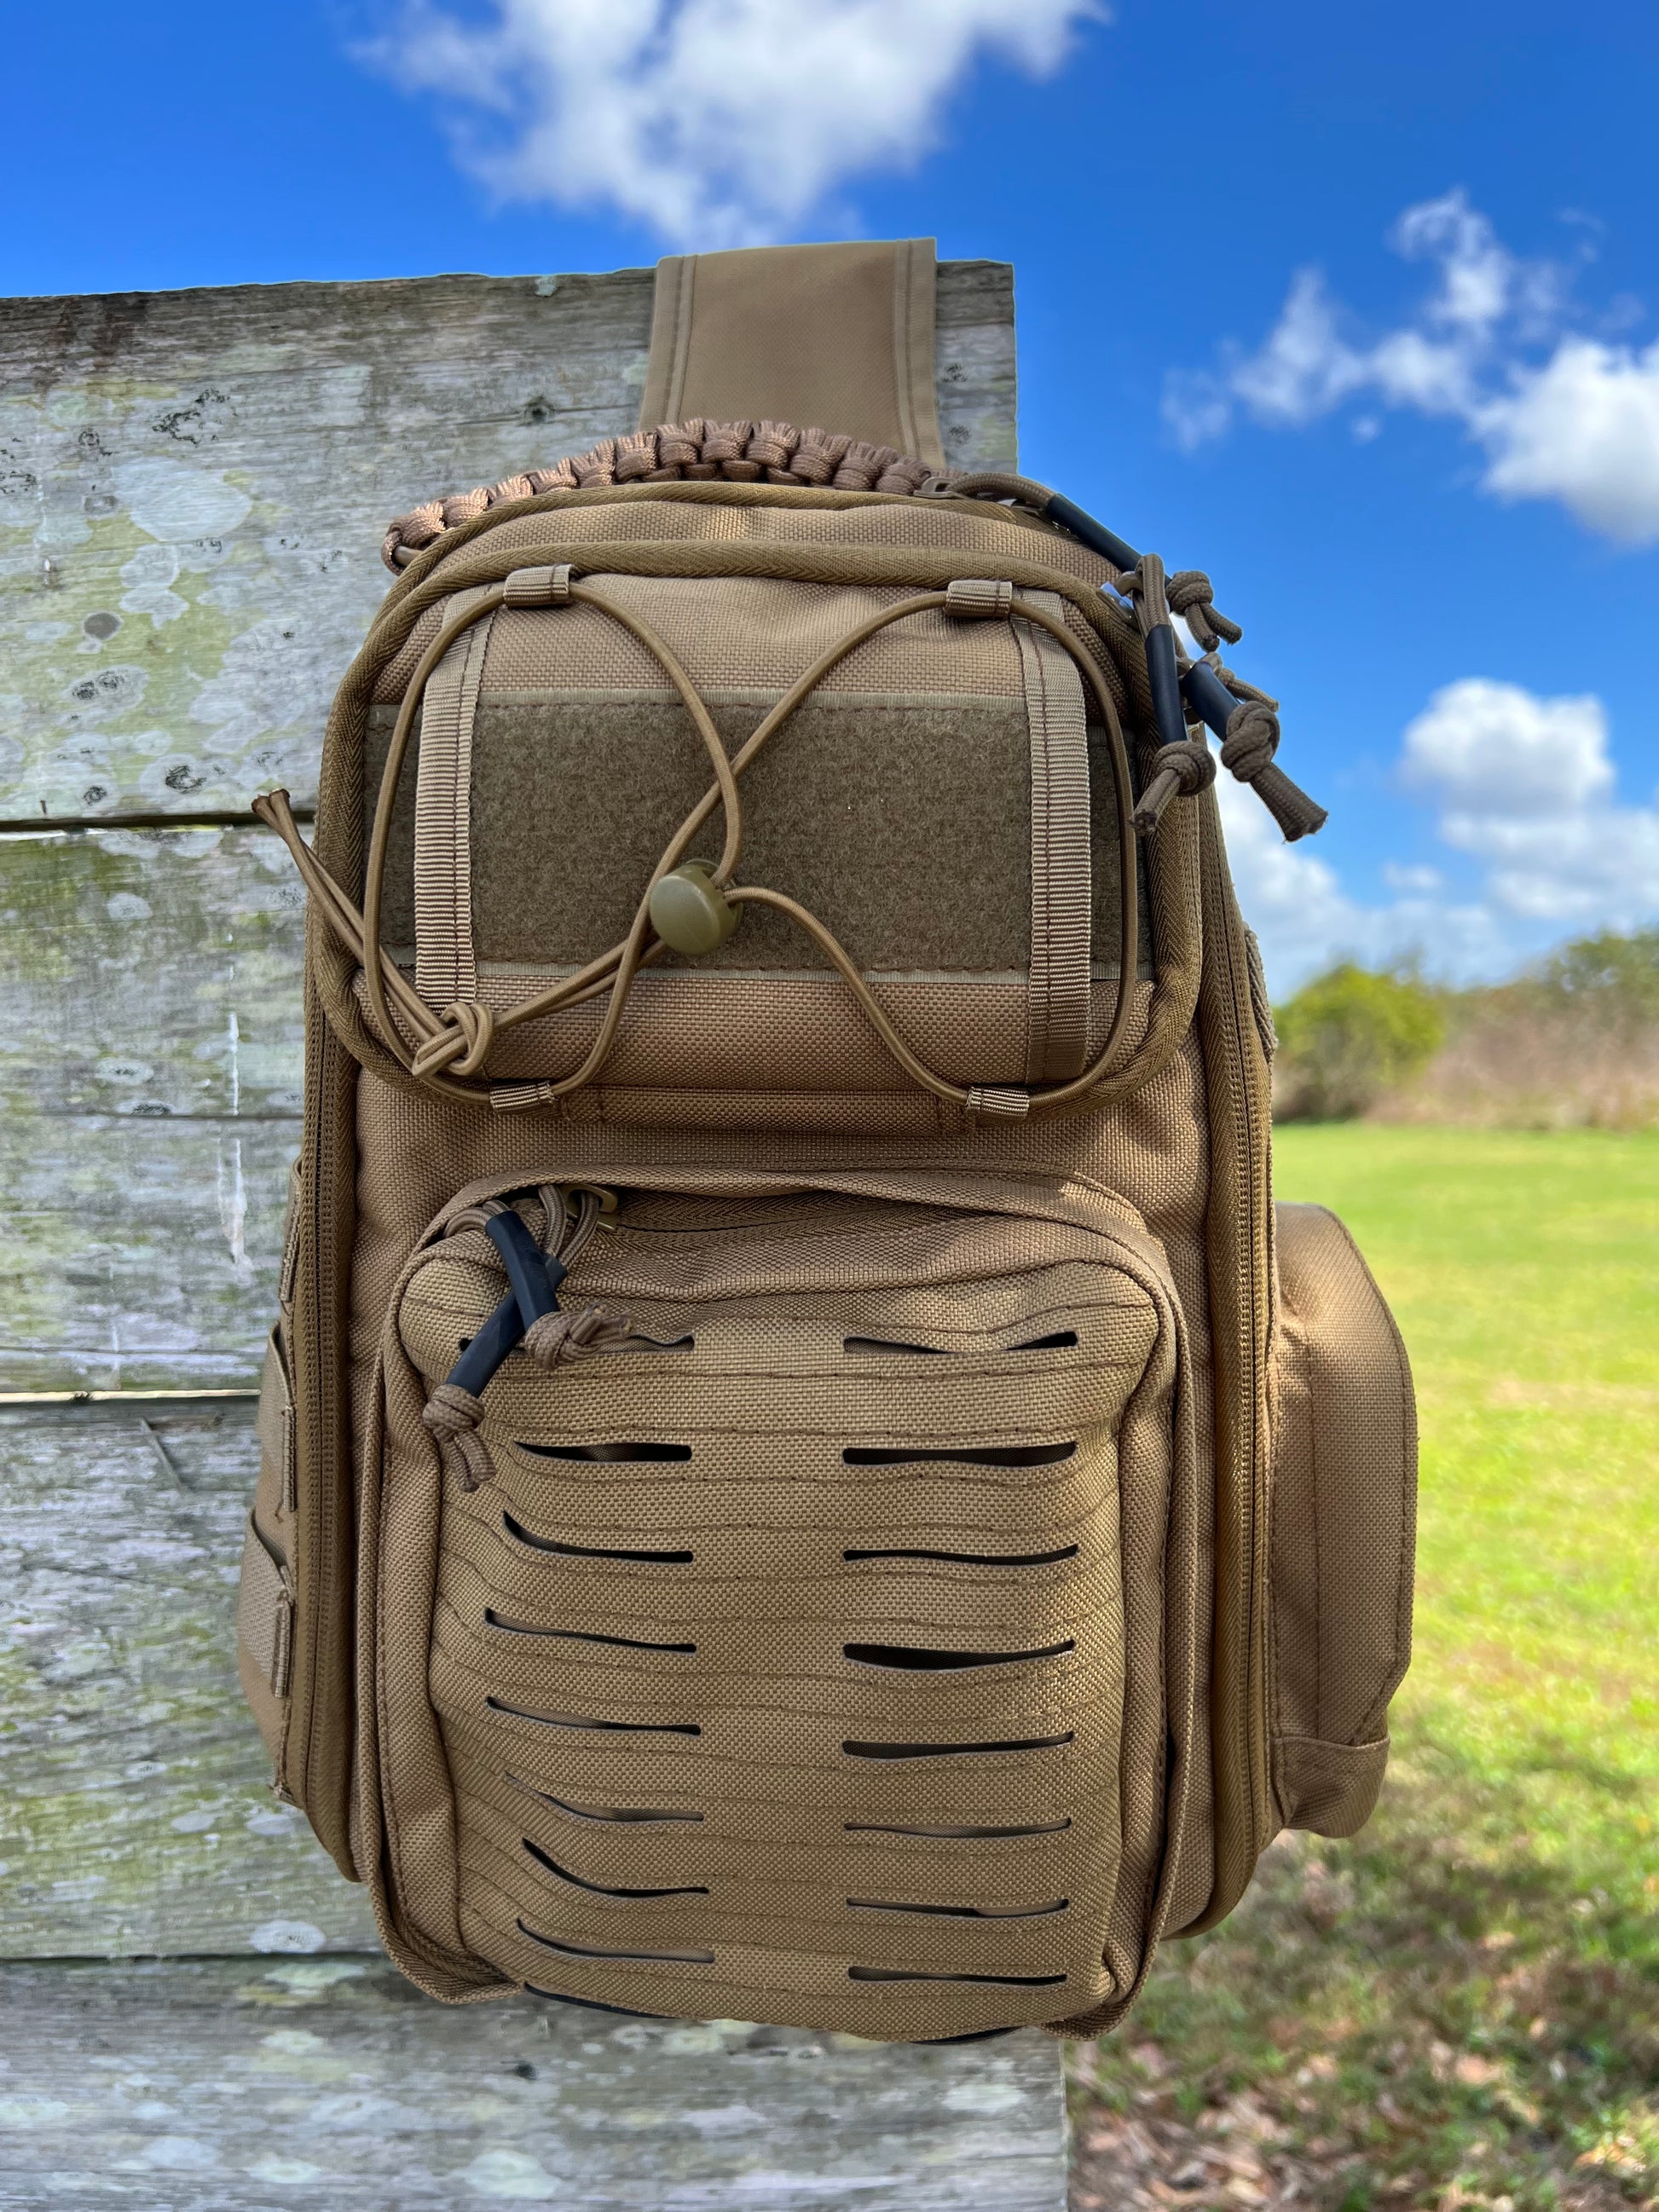 IJ Tactical Sling Backpack, tactical shoulder bag